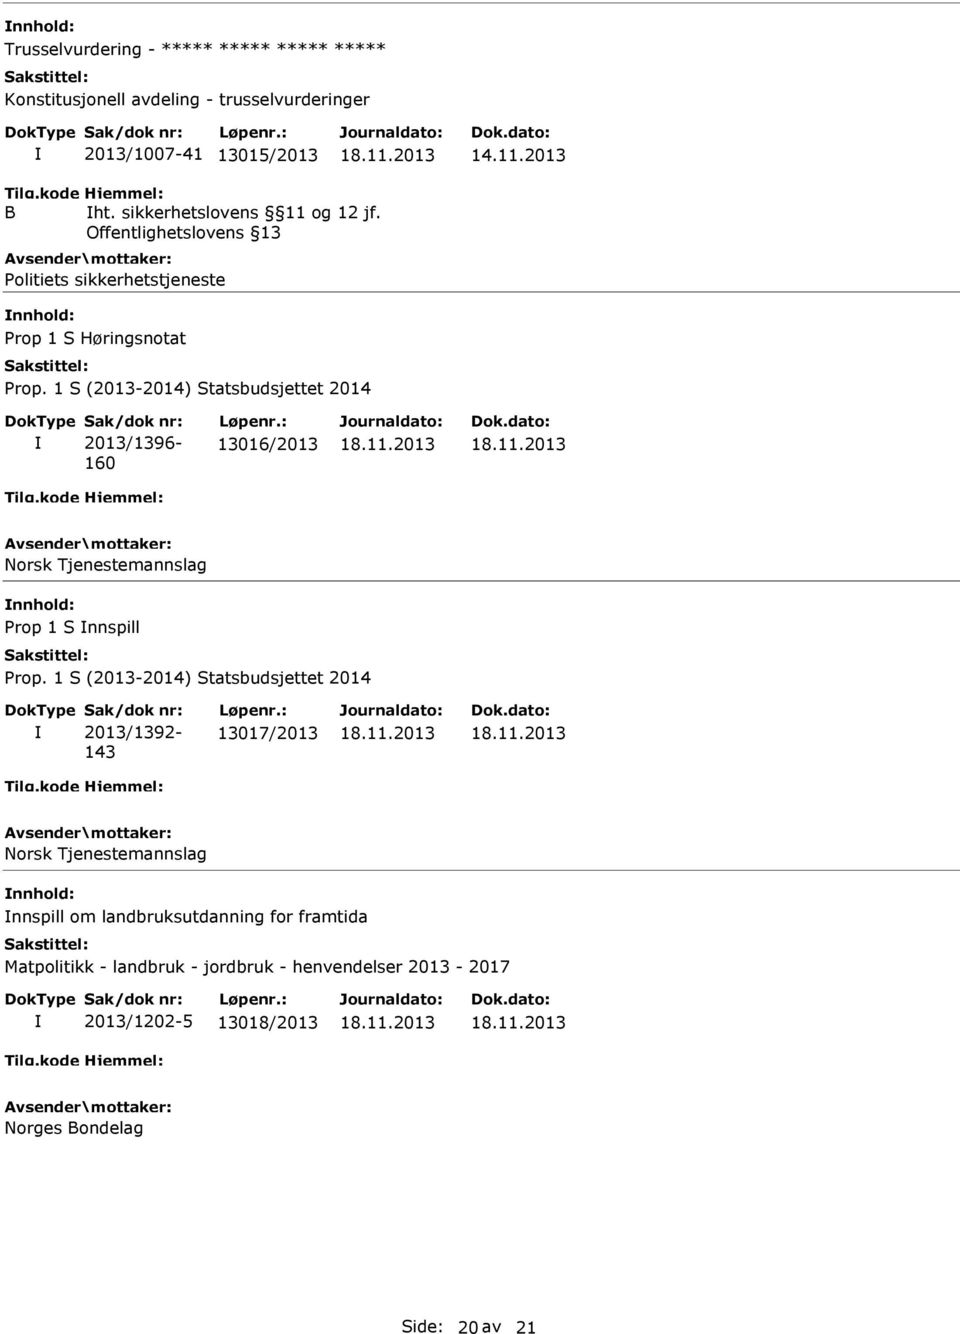 Offentlighetslovens 13 Politiets sikkerhetstjeneste Prop 1 S Høringsnotat 2013/1396-160 13016/2013 Norsk